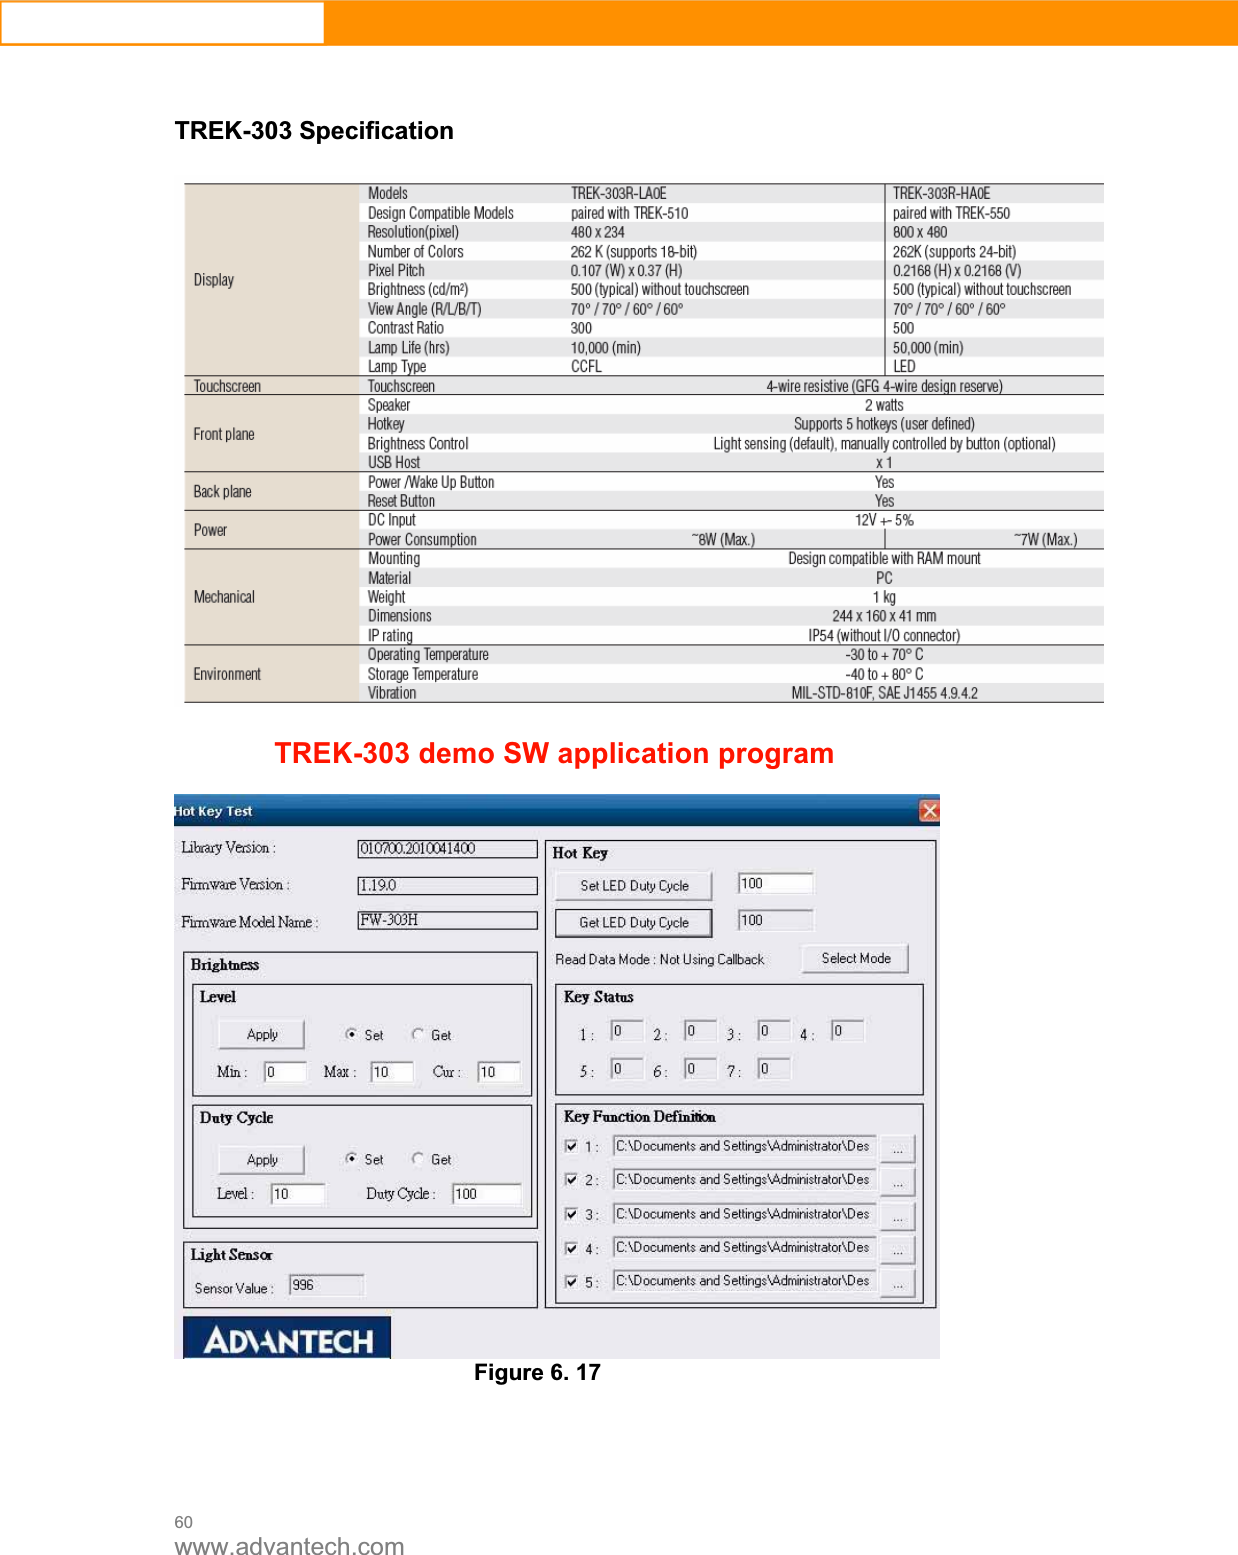 60www.advantech.comTREK-303 Specification TREK-303 demo SW application programFigure 6. 17 